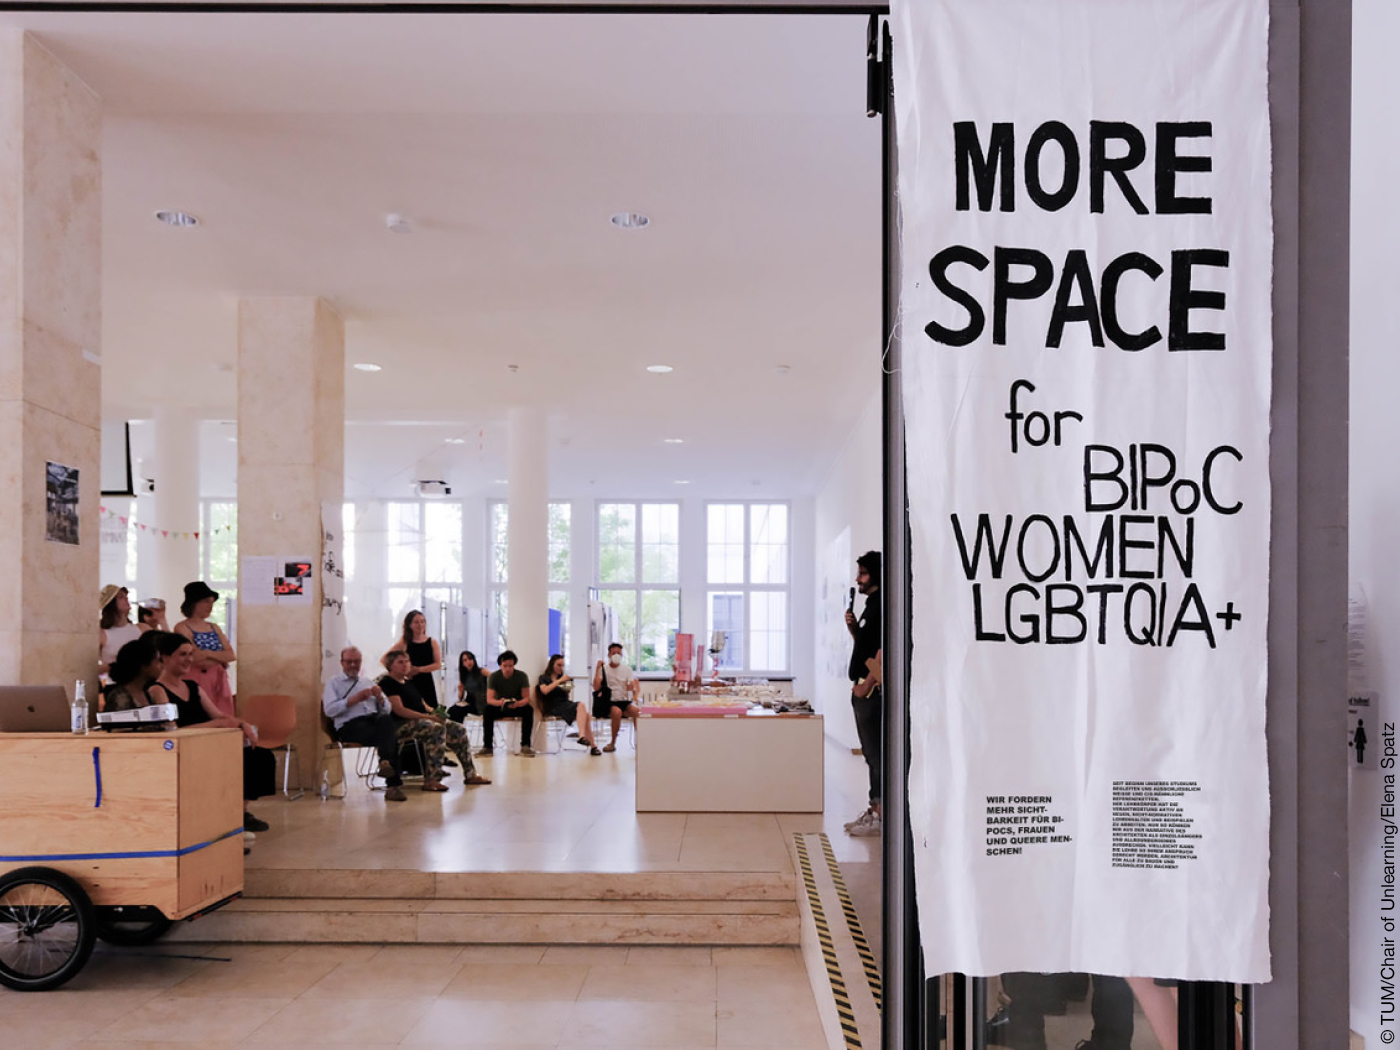 Uni-Veranstaltung mit Transparent: "MORE SPACE für BIPoC WOMEN LGBTQIA+"